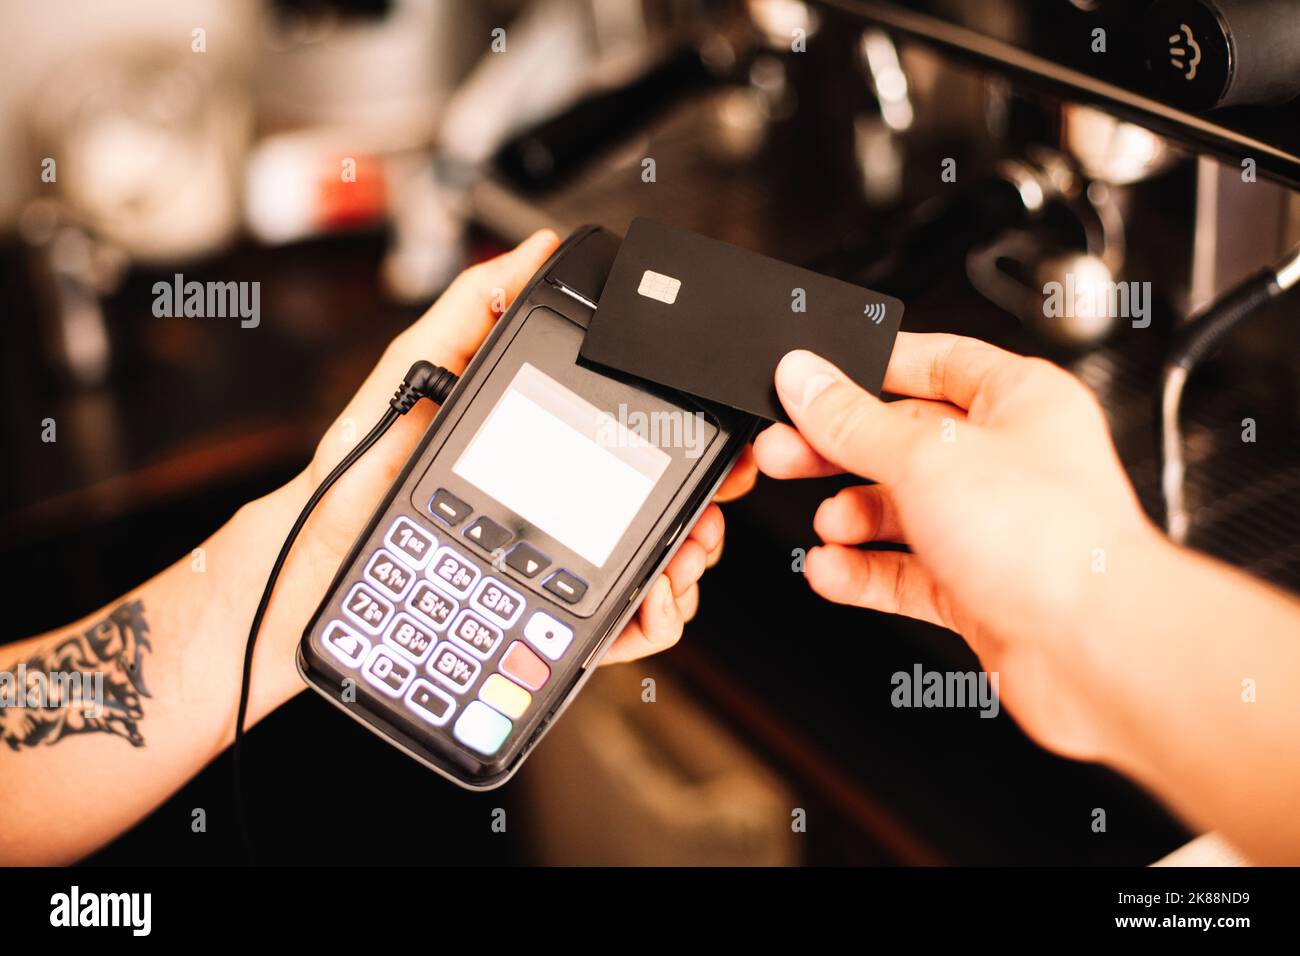 Le barista tient le terminal du lecteur de carte de crédit pendant que le client effectue un paiement sans contact à l'aide d'une carte de crédit Banque D'Images